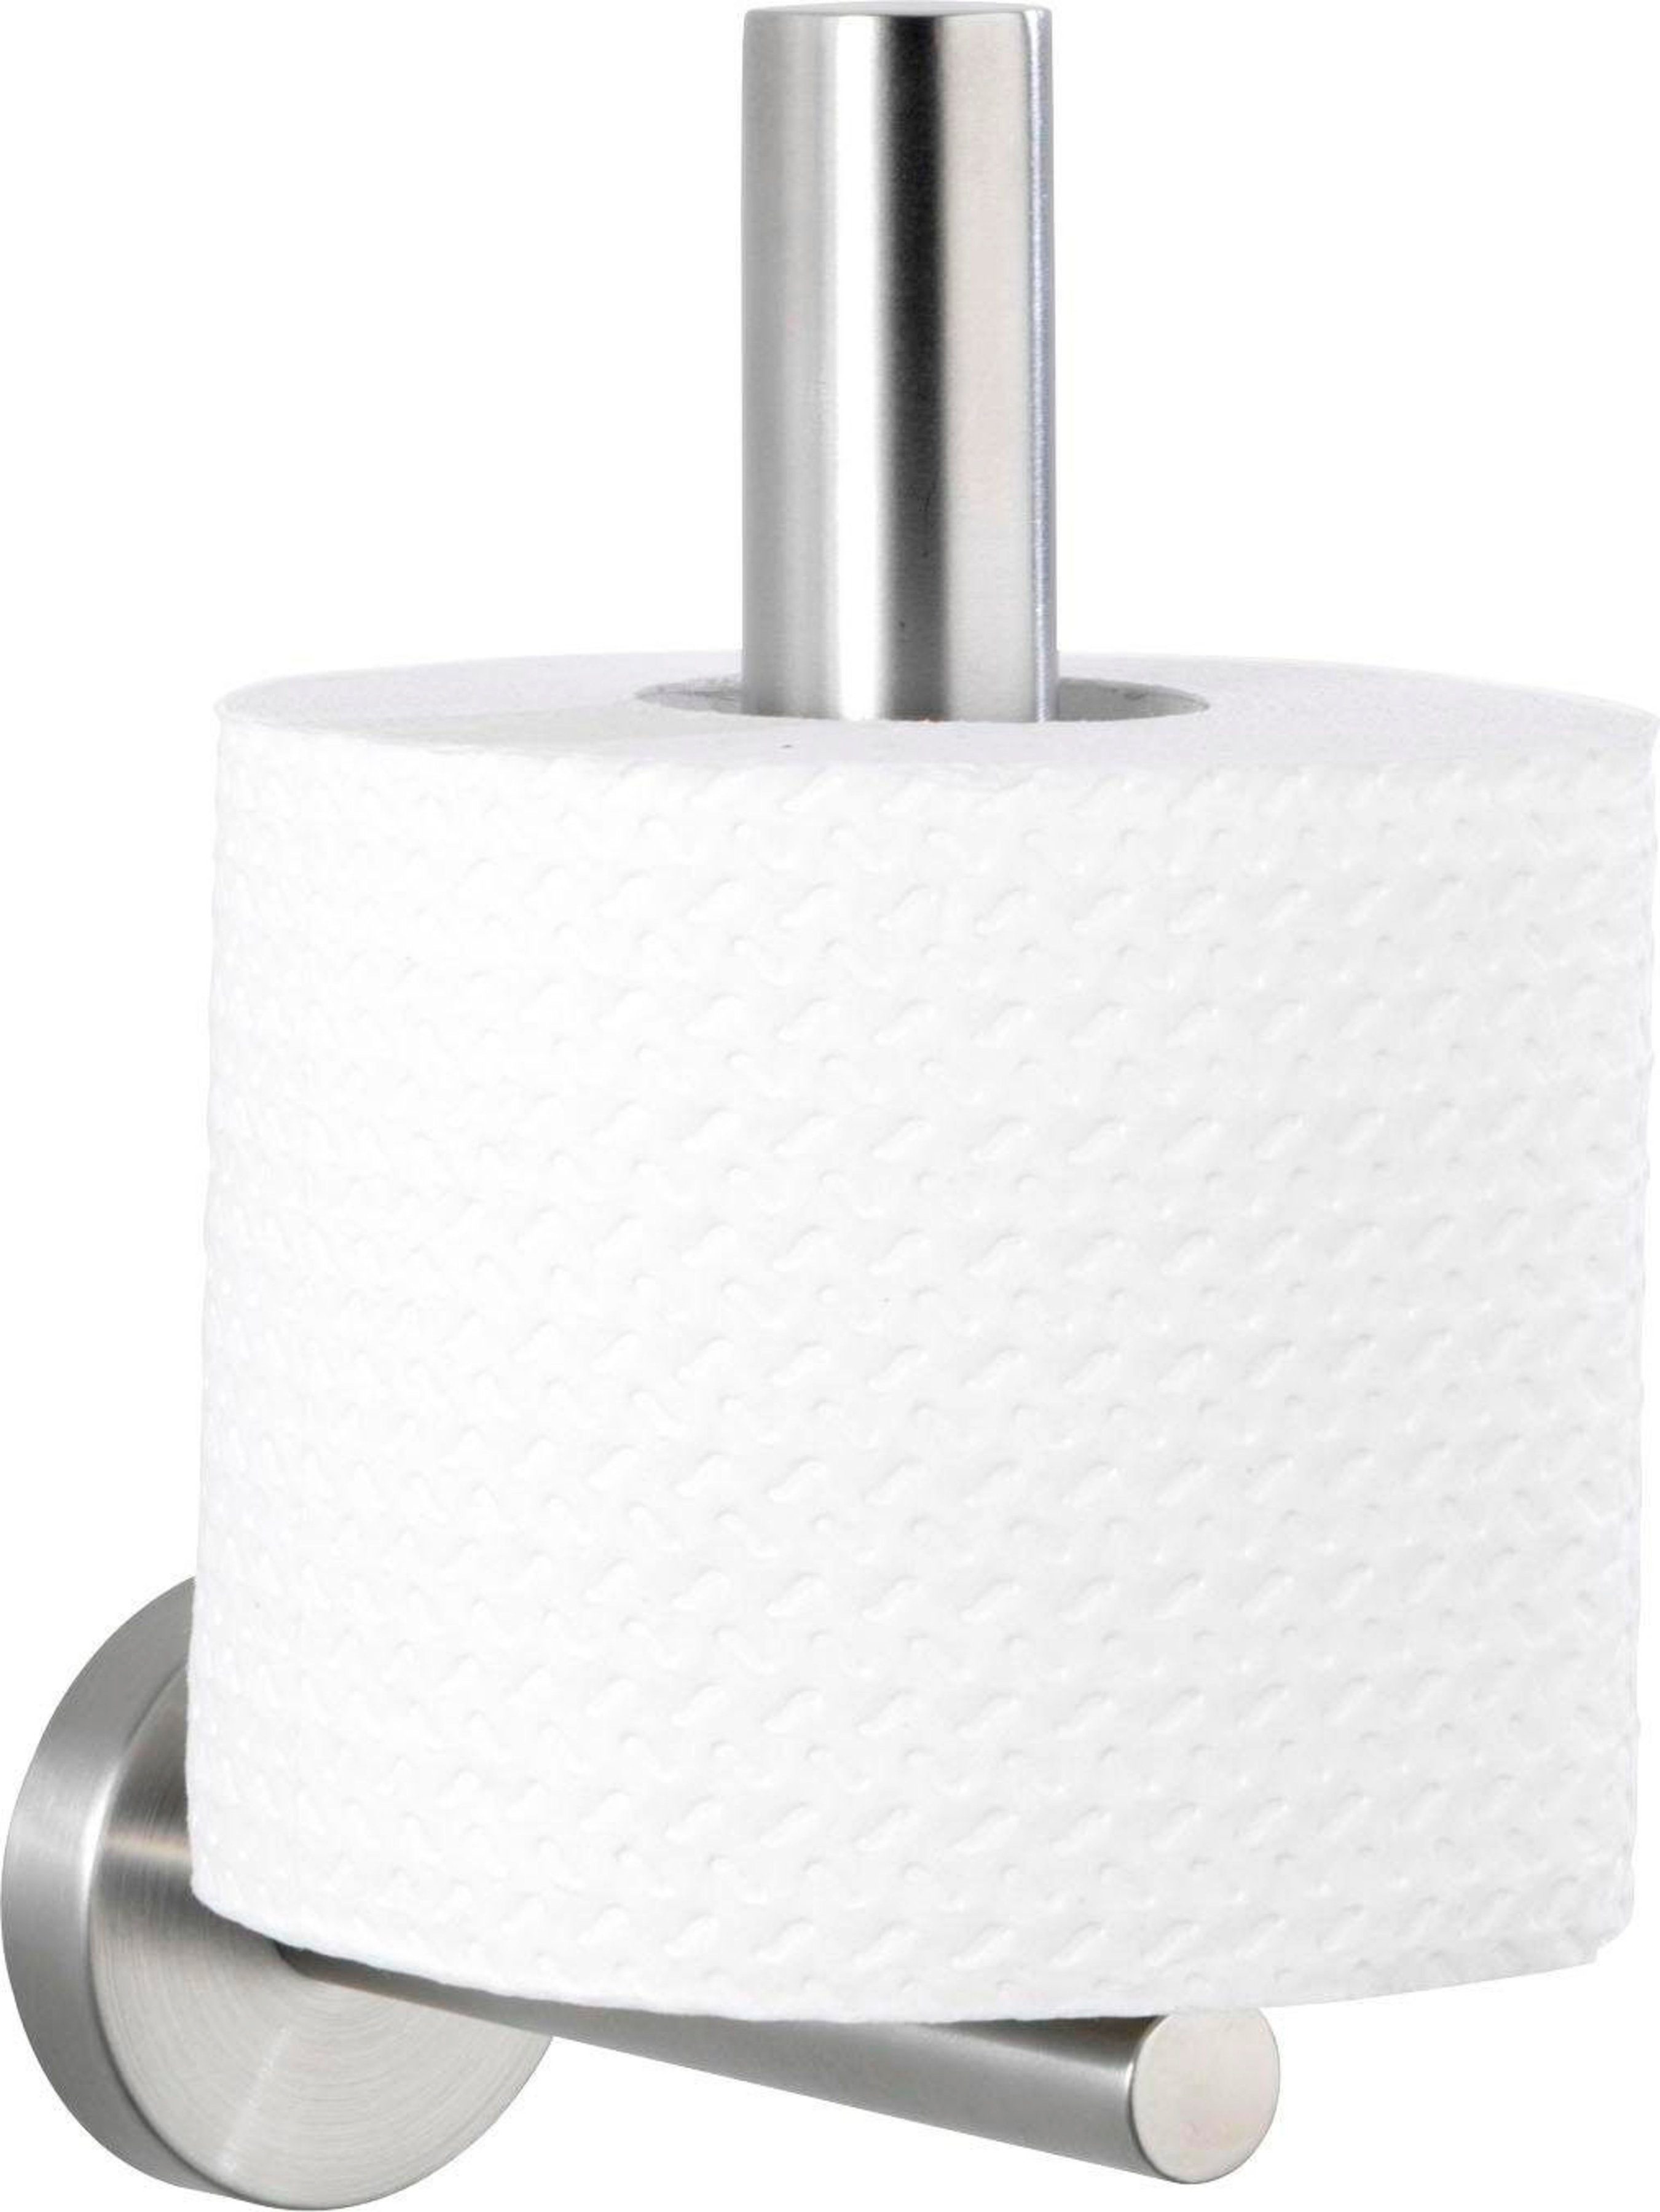 rostfrei, für Edelstahl, Bosio, WENKO eine Platz Toiletten-Ersatzrollenhalter Papier-Ersatzrolle